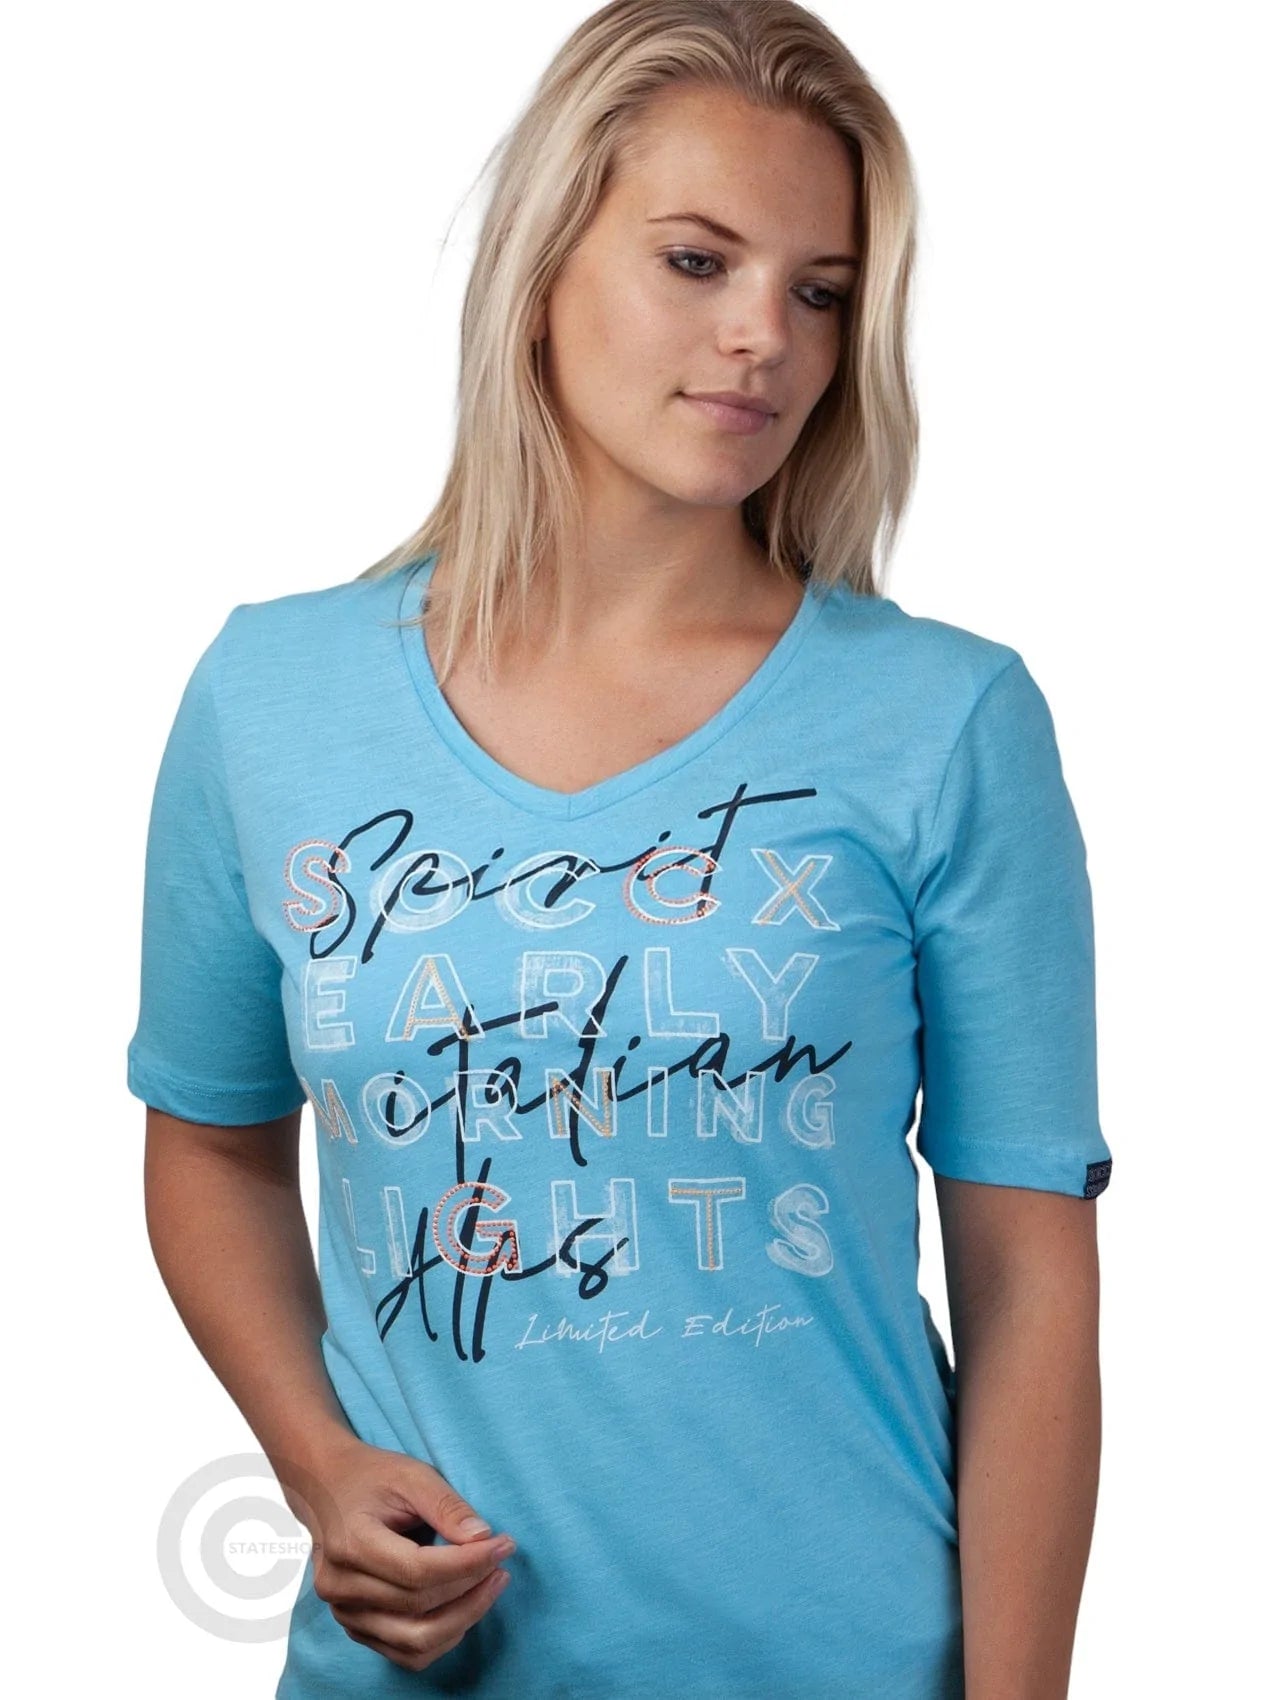 und Stateshop Soccx ® - Fashion Logografik T-Shirt Blau mit V-Ausschnitt,